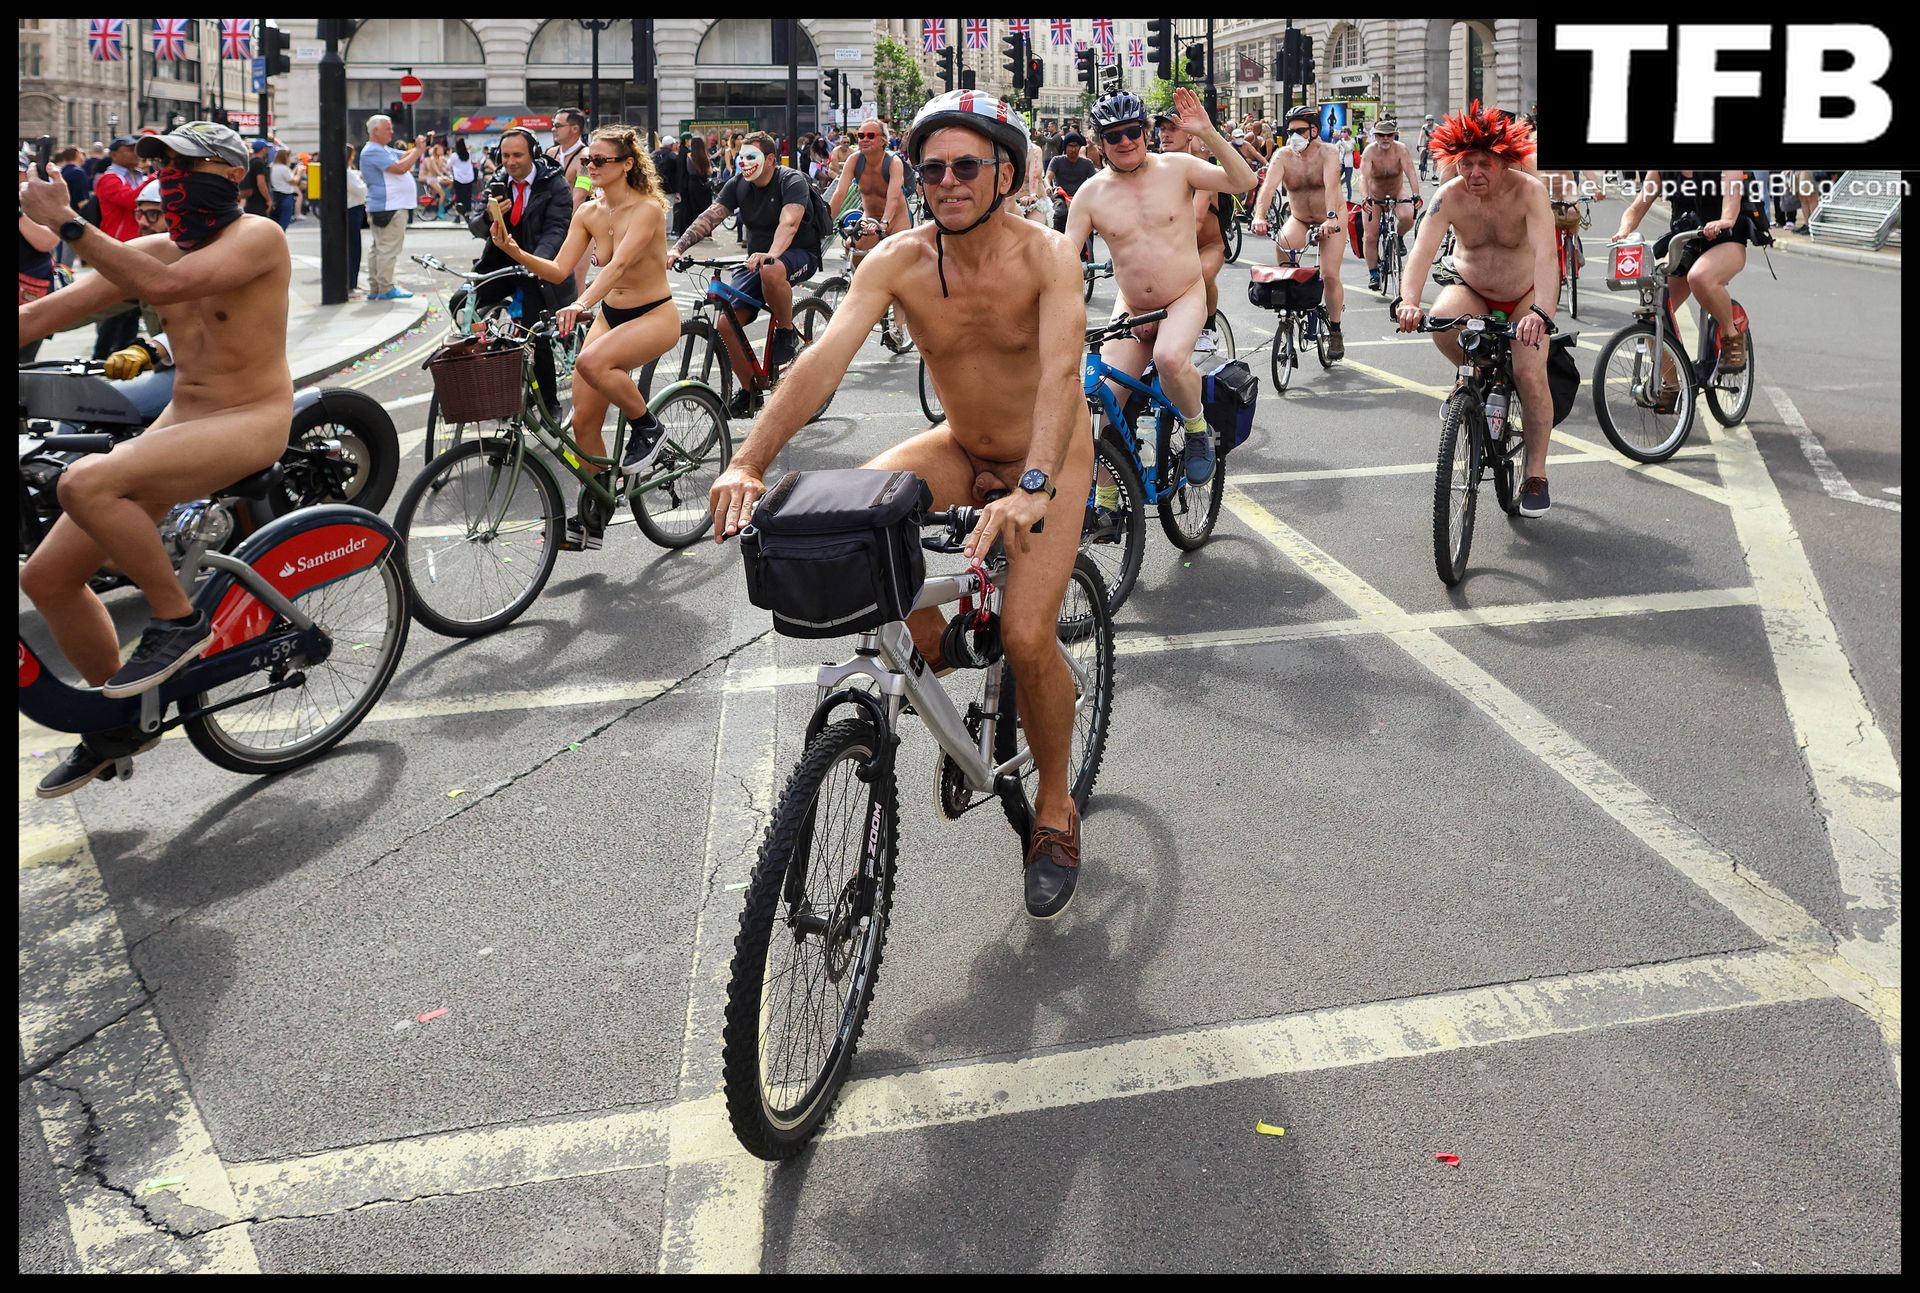 The-2022-World-Naked-Bike-Ride-The-Fappening-Blog-33.jpg